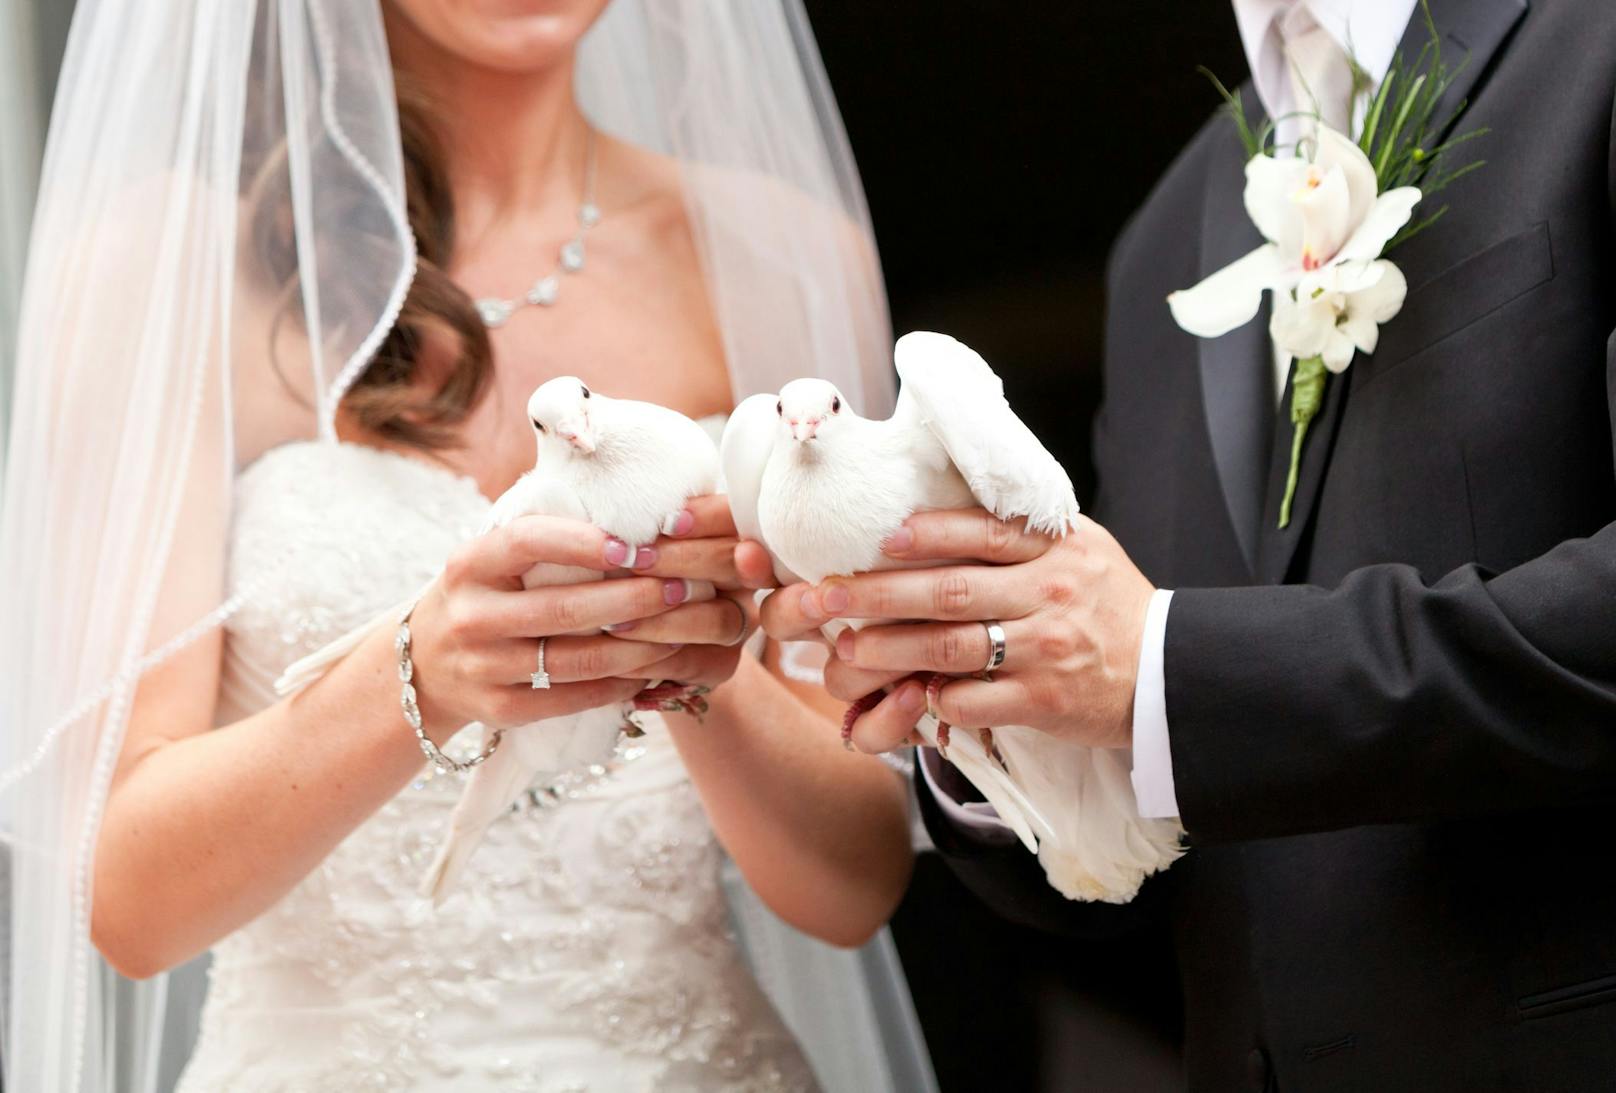 Eine traditionelle Hochzeit beinhaltet leider manchmal sehr tierquälerische Bräuche. 